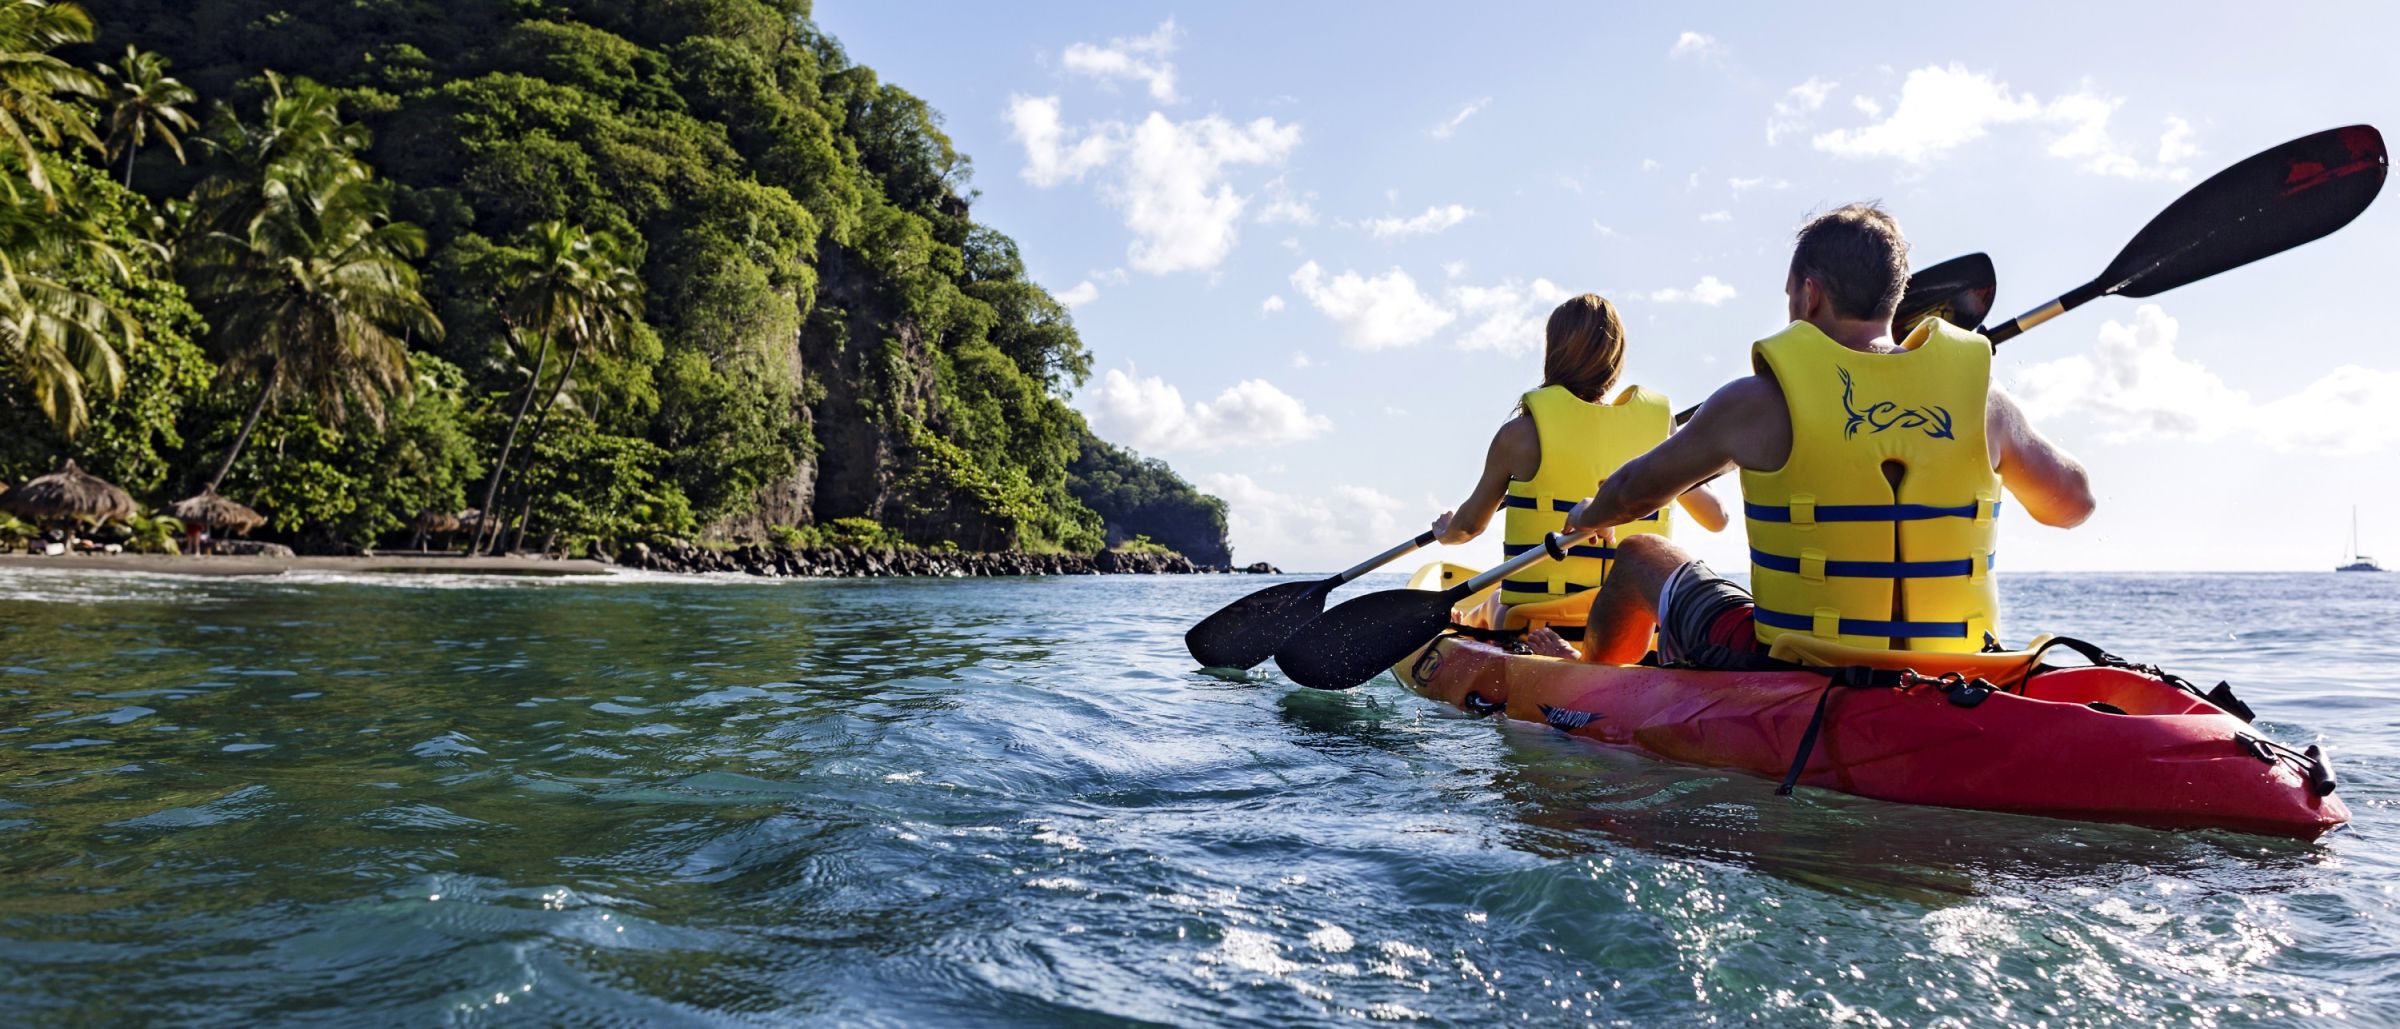 Per Kayak erkundet man die Küste und erreicht versteckte Buchten